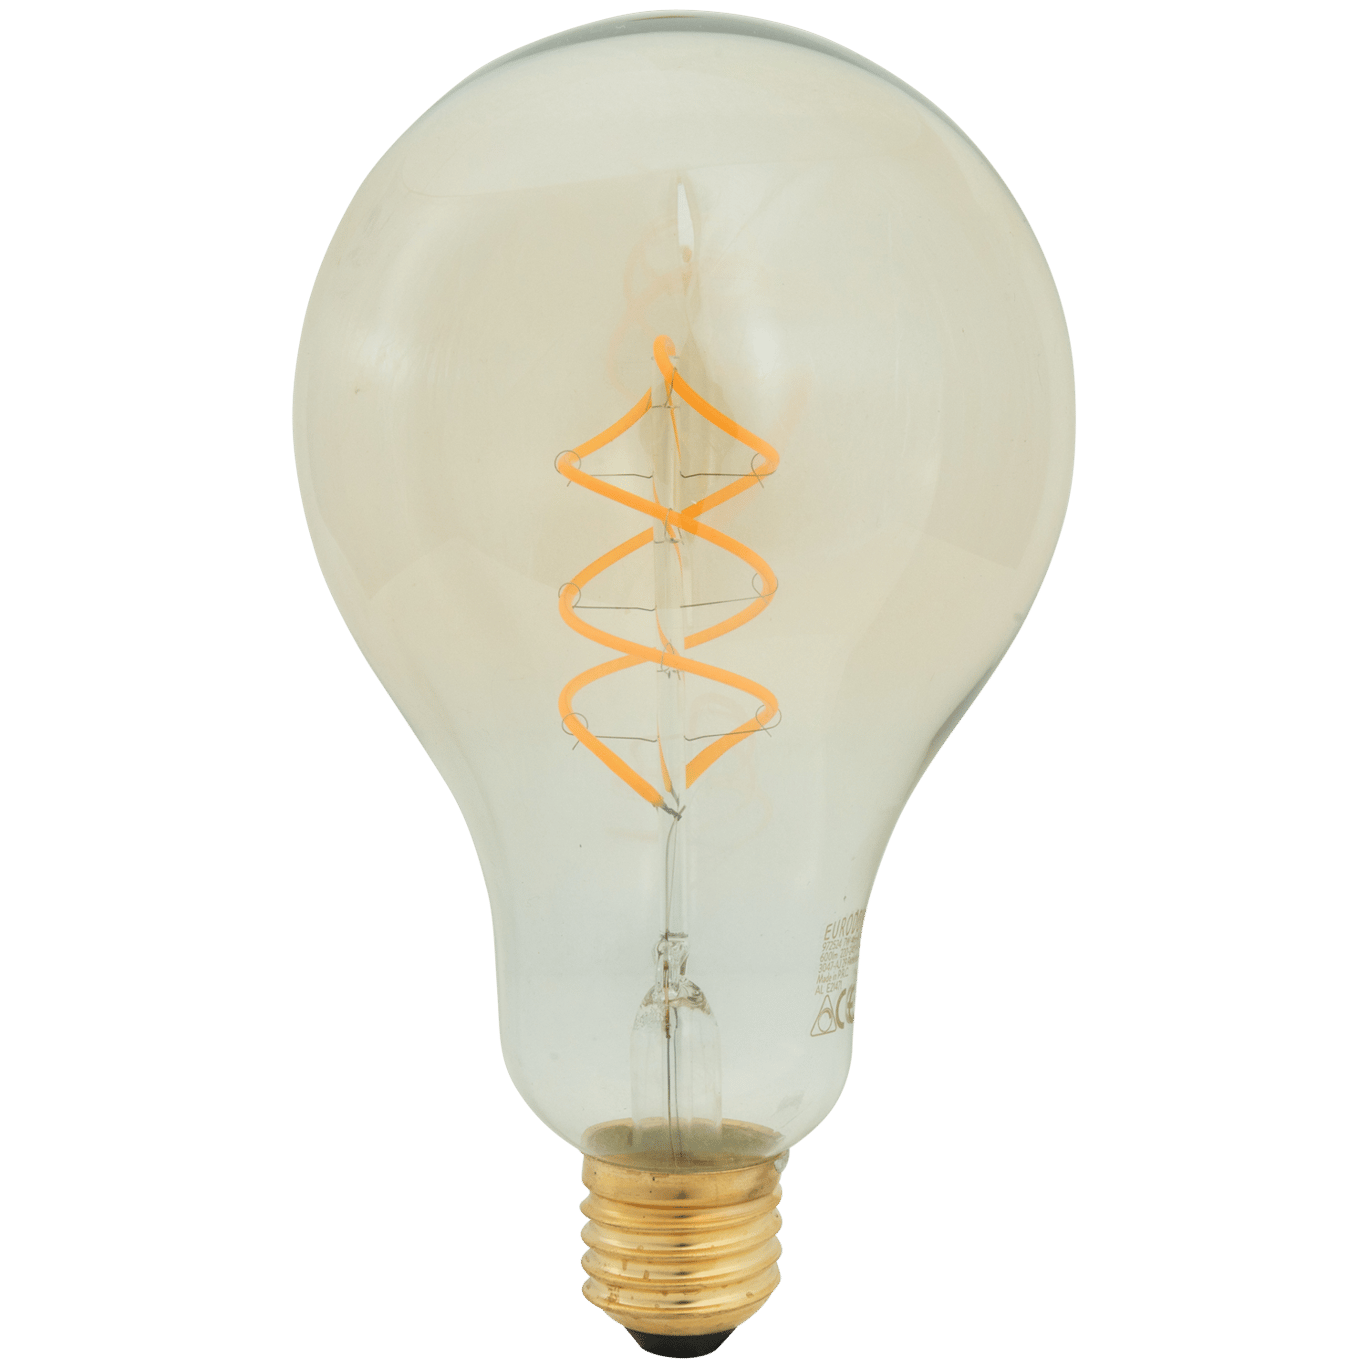 ontmoeten Hoogland open haard Eurodomest retro filament-ledlamp | Action.com